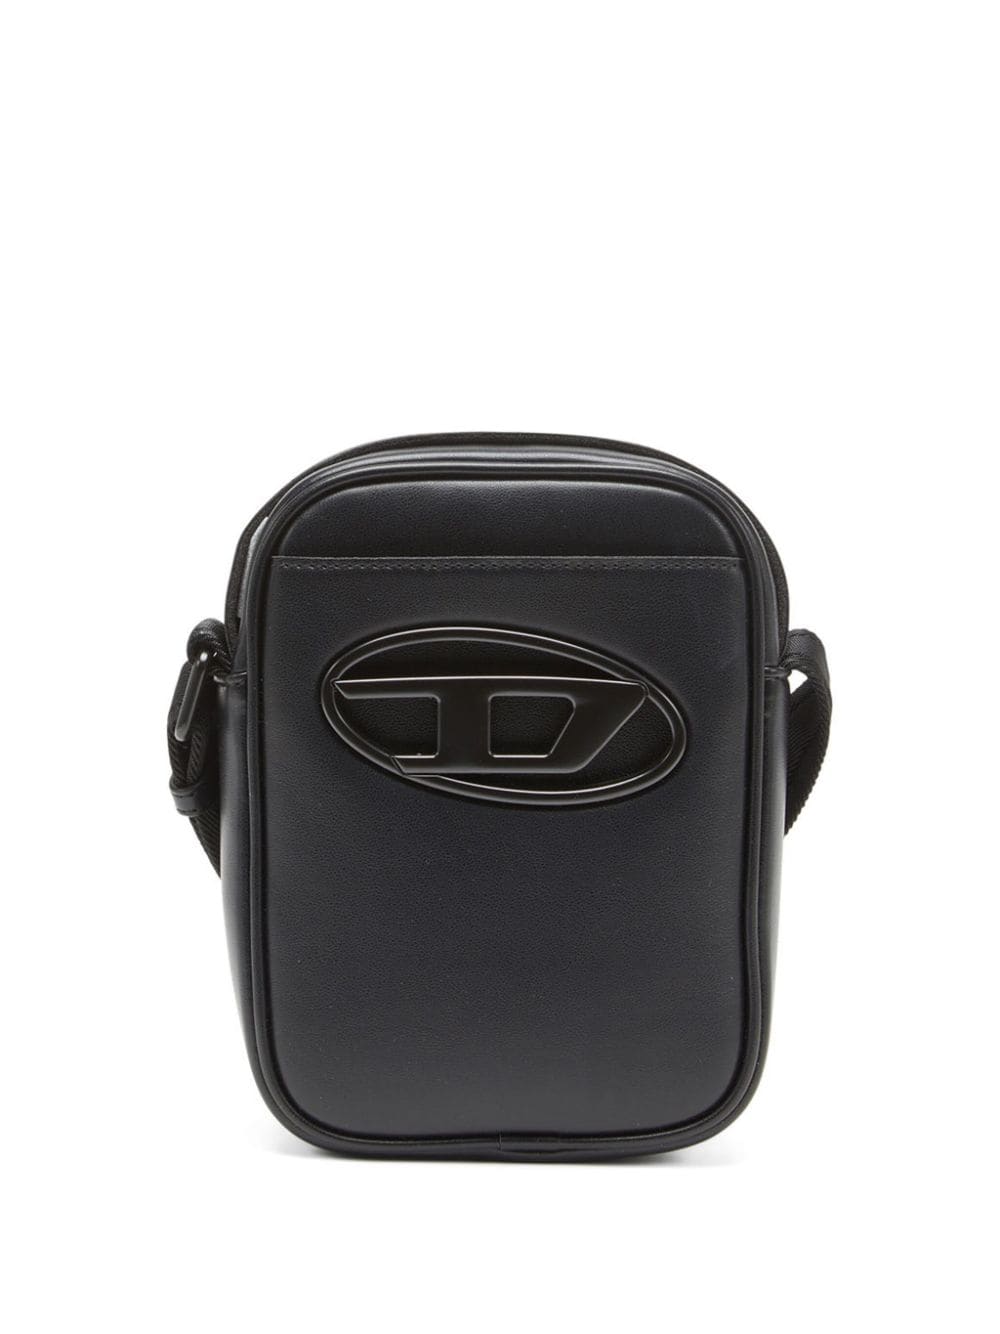 Diesel Holi-d Zipped Messenger Bag In Black